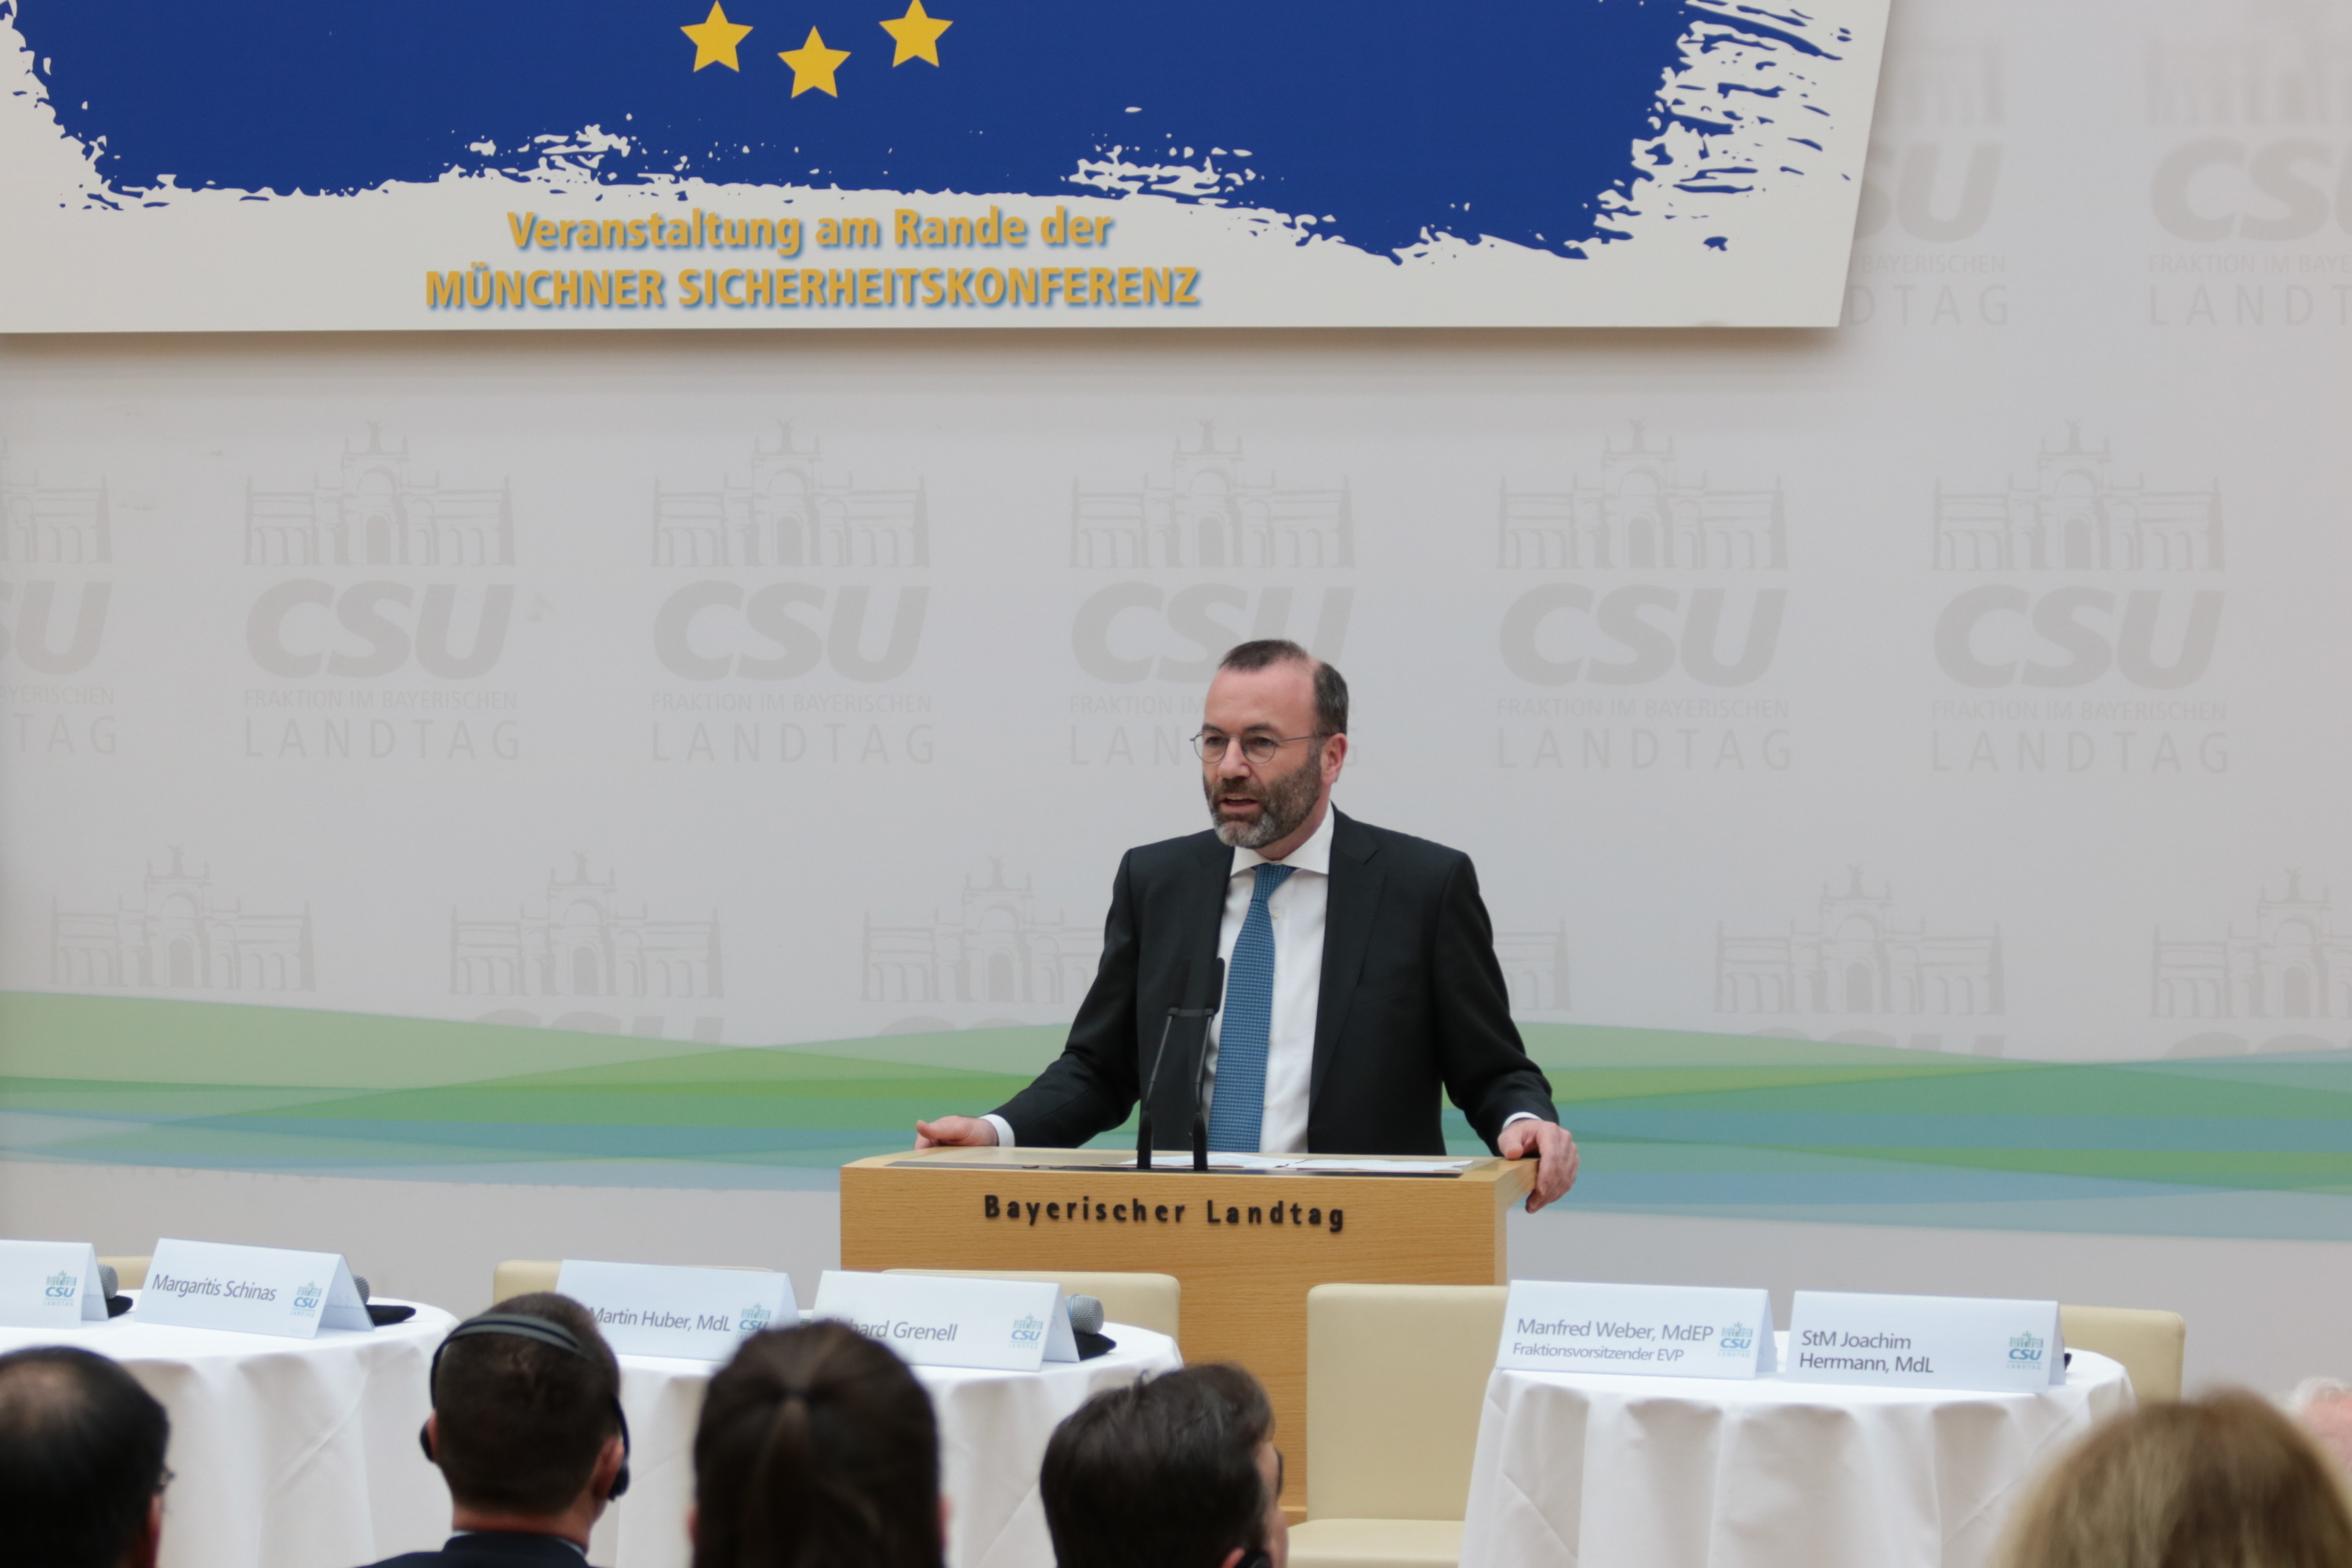 11.21.2020 - Wie viel Sicherheit braucht Europa? Veranstaltung am Rande der Münchner Sicherheitskonferenz 2020 - Manfred Weber, Vorsitzender der EVP-Frakion im Europäischen Parlament. (Foto: CSU-Fraktion) 